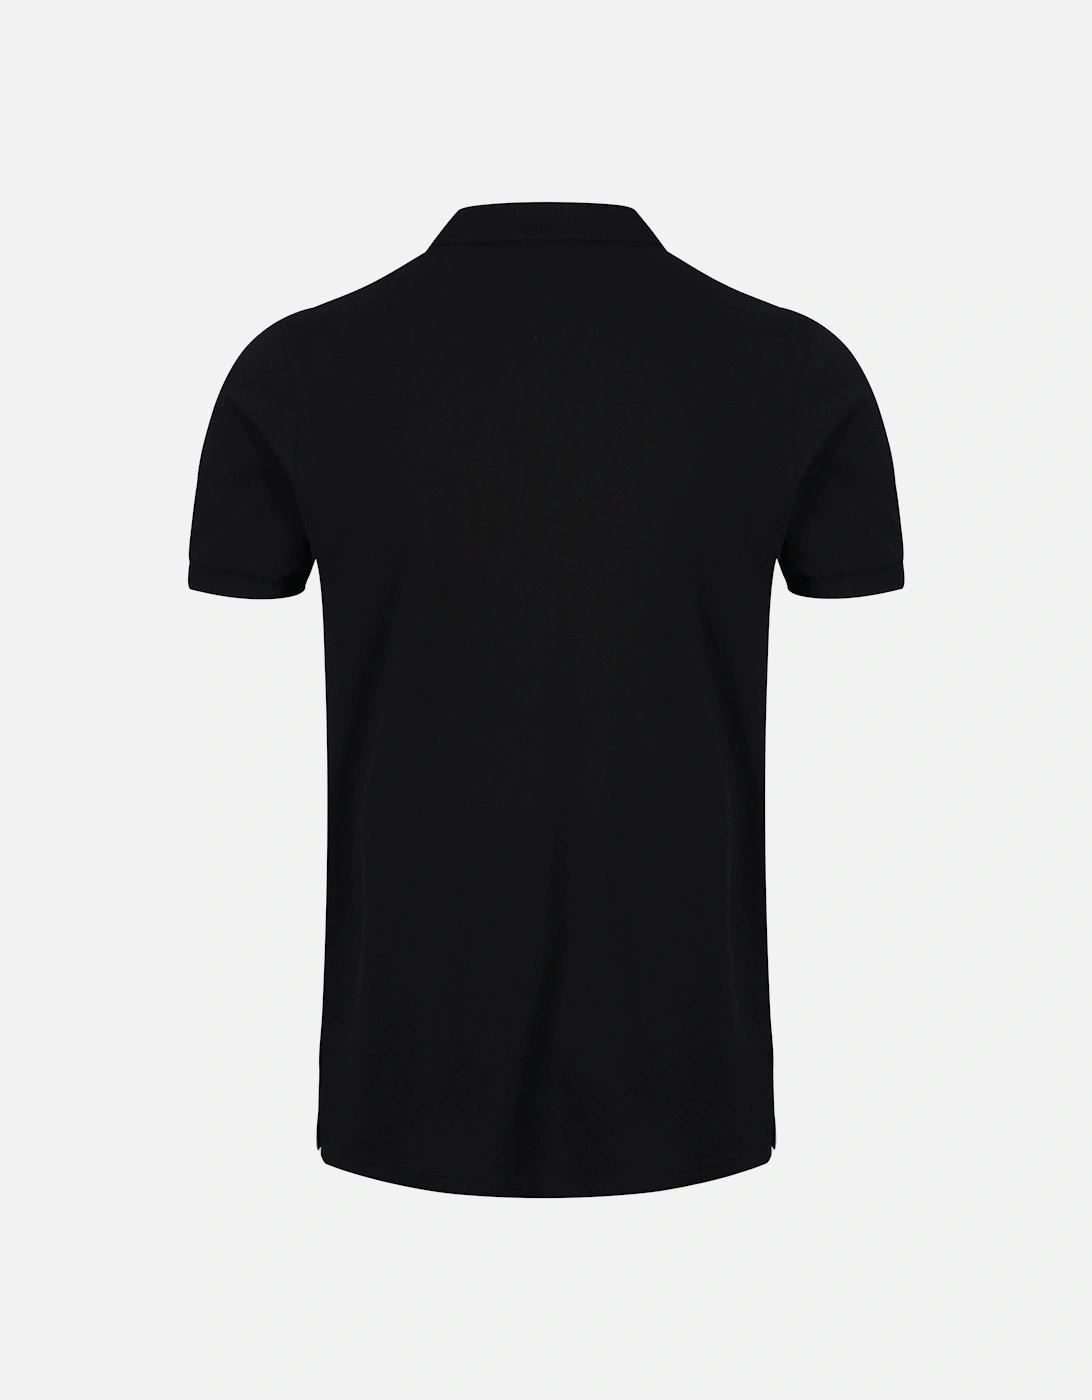 Rio Polo Shirt | Black/Grey